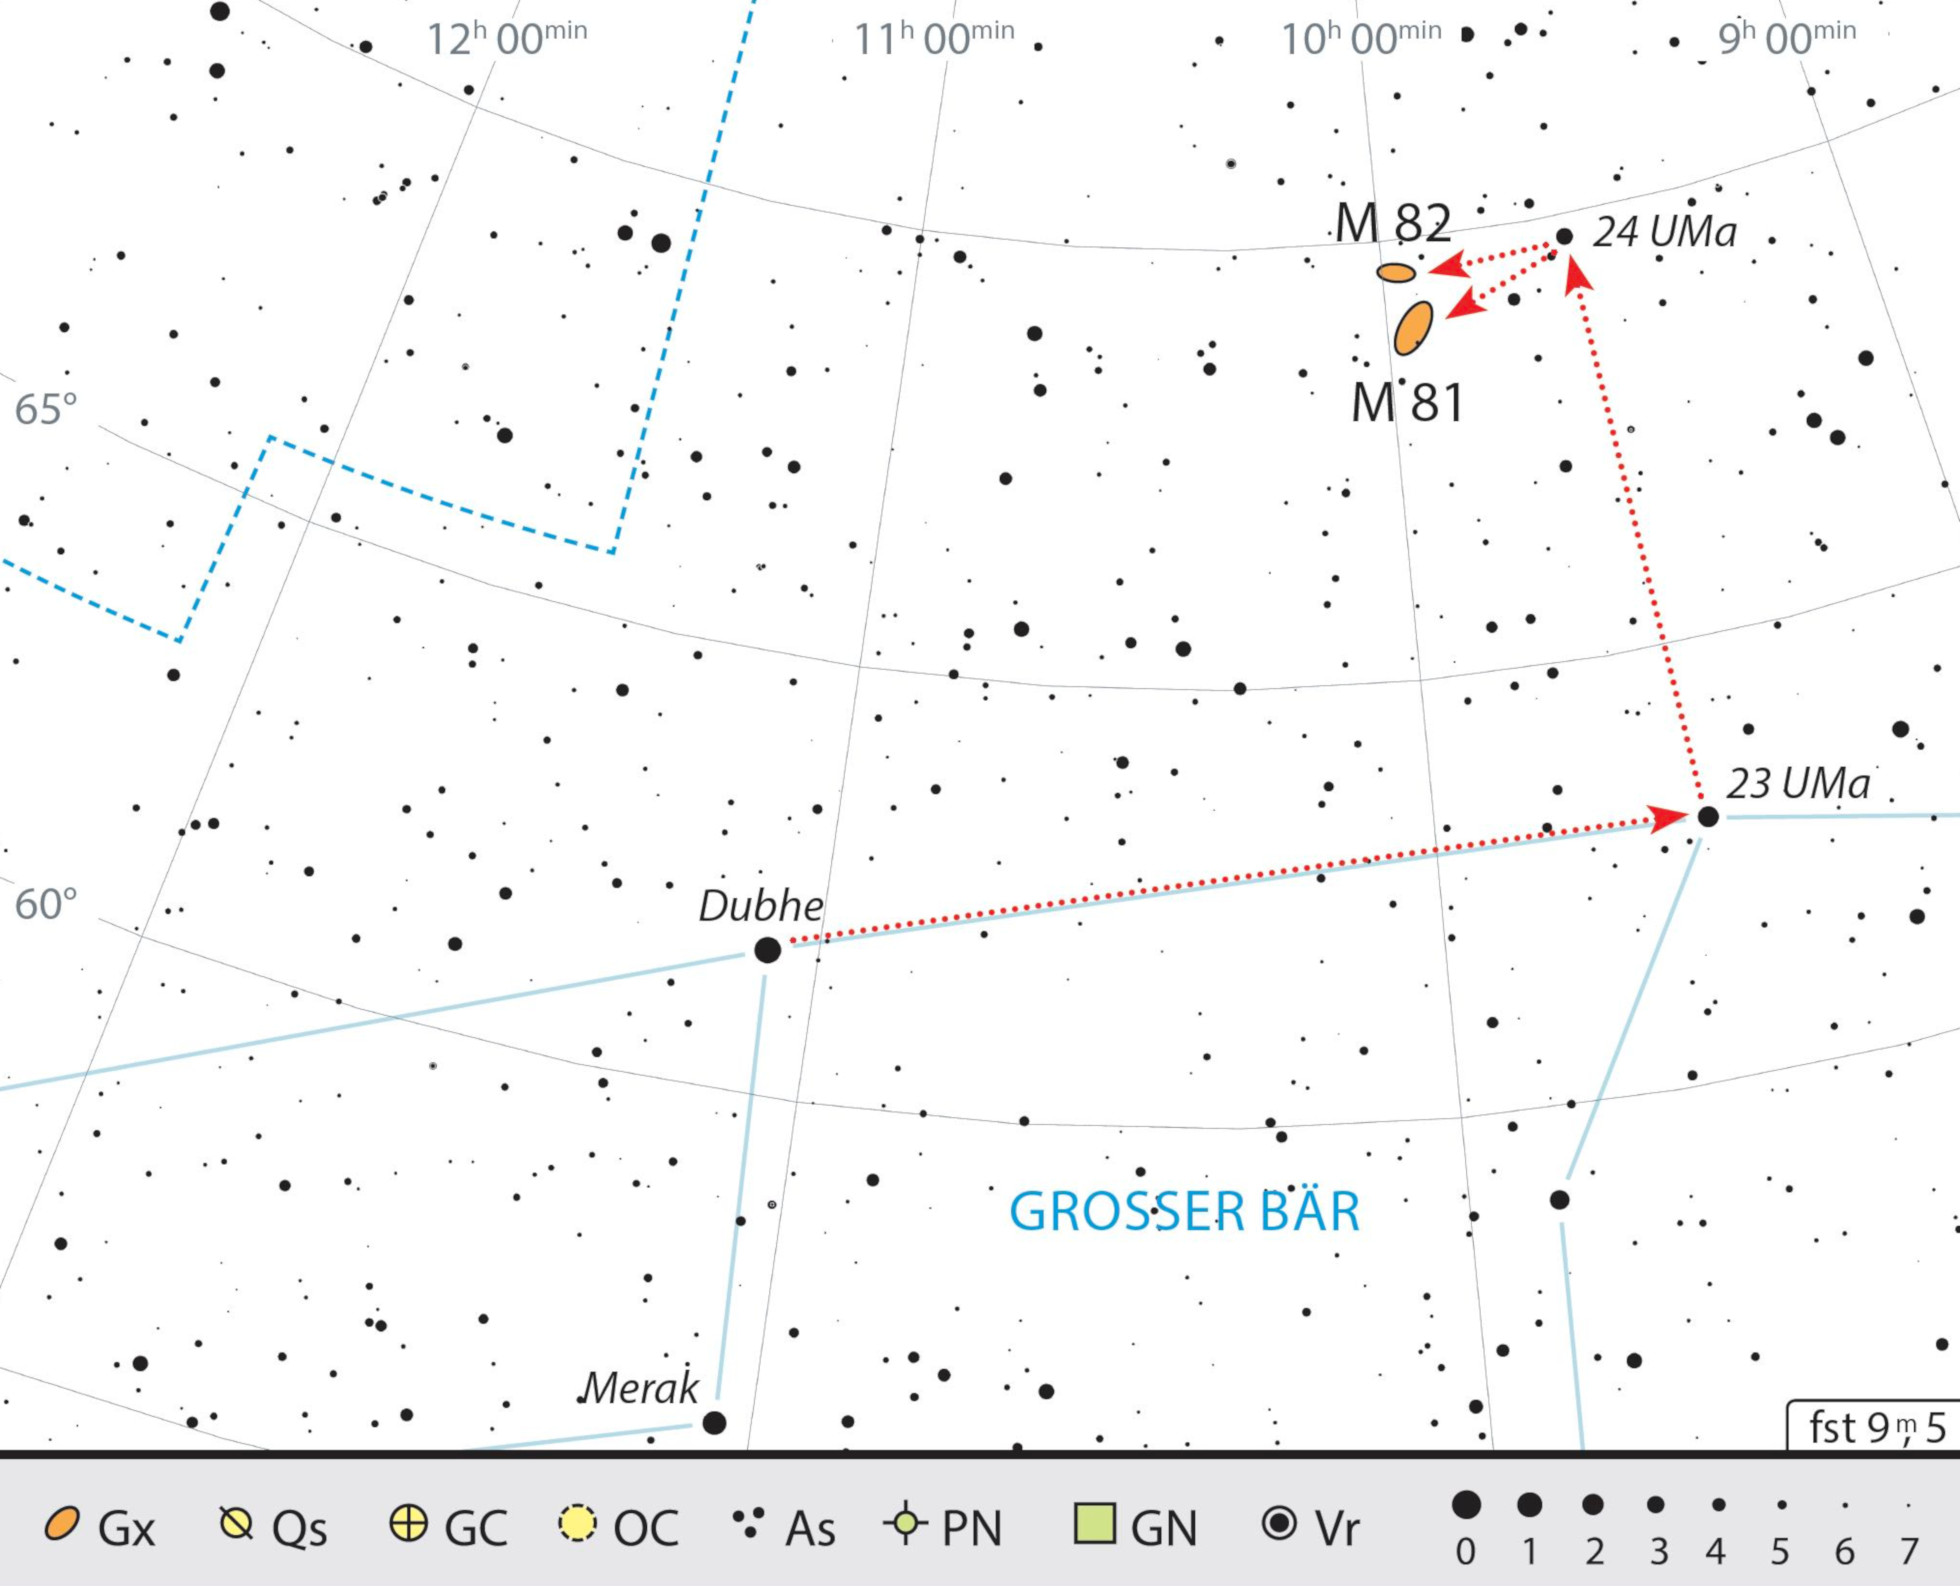 Mappa celeste per M81 e M82 nella costellazione dell'Orsa Maggiore J. Scholten